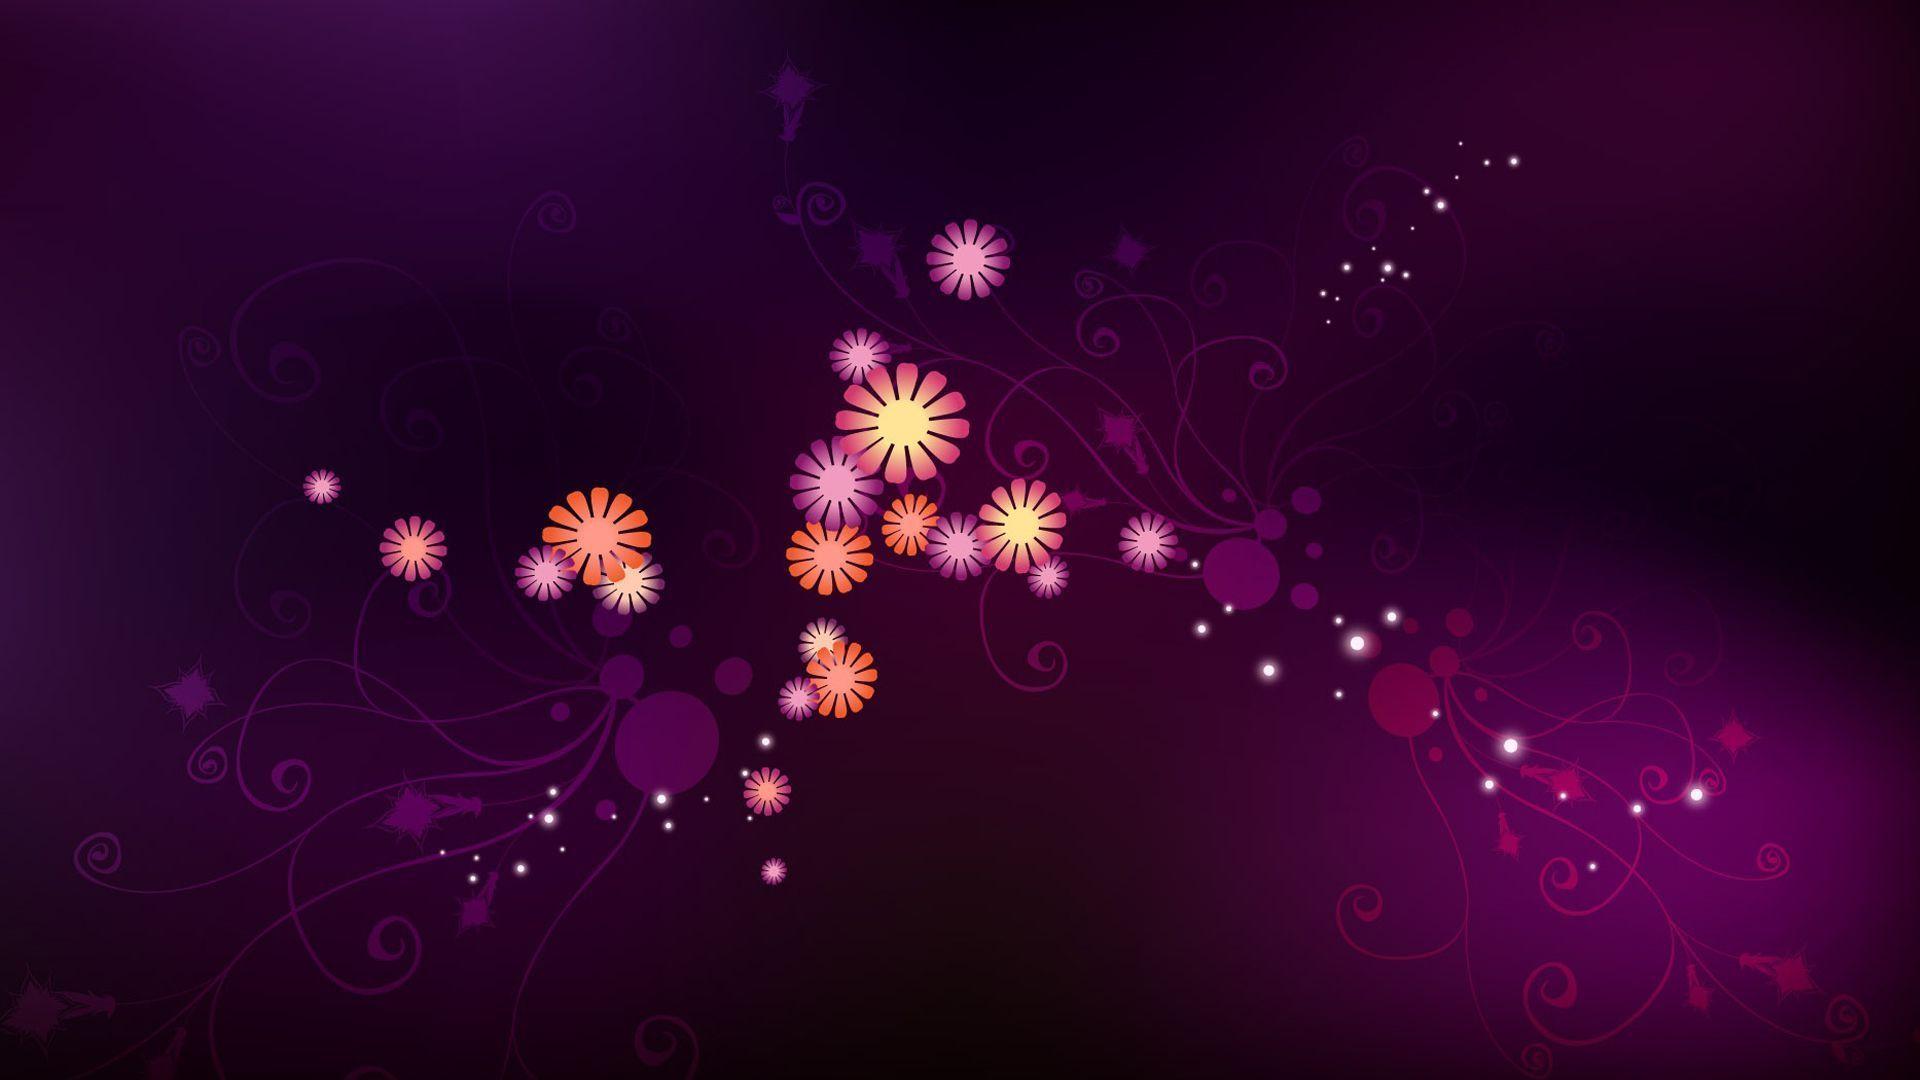 Wallpaper For > Purple Flower Background For Desktop